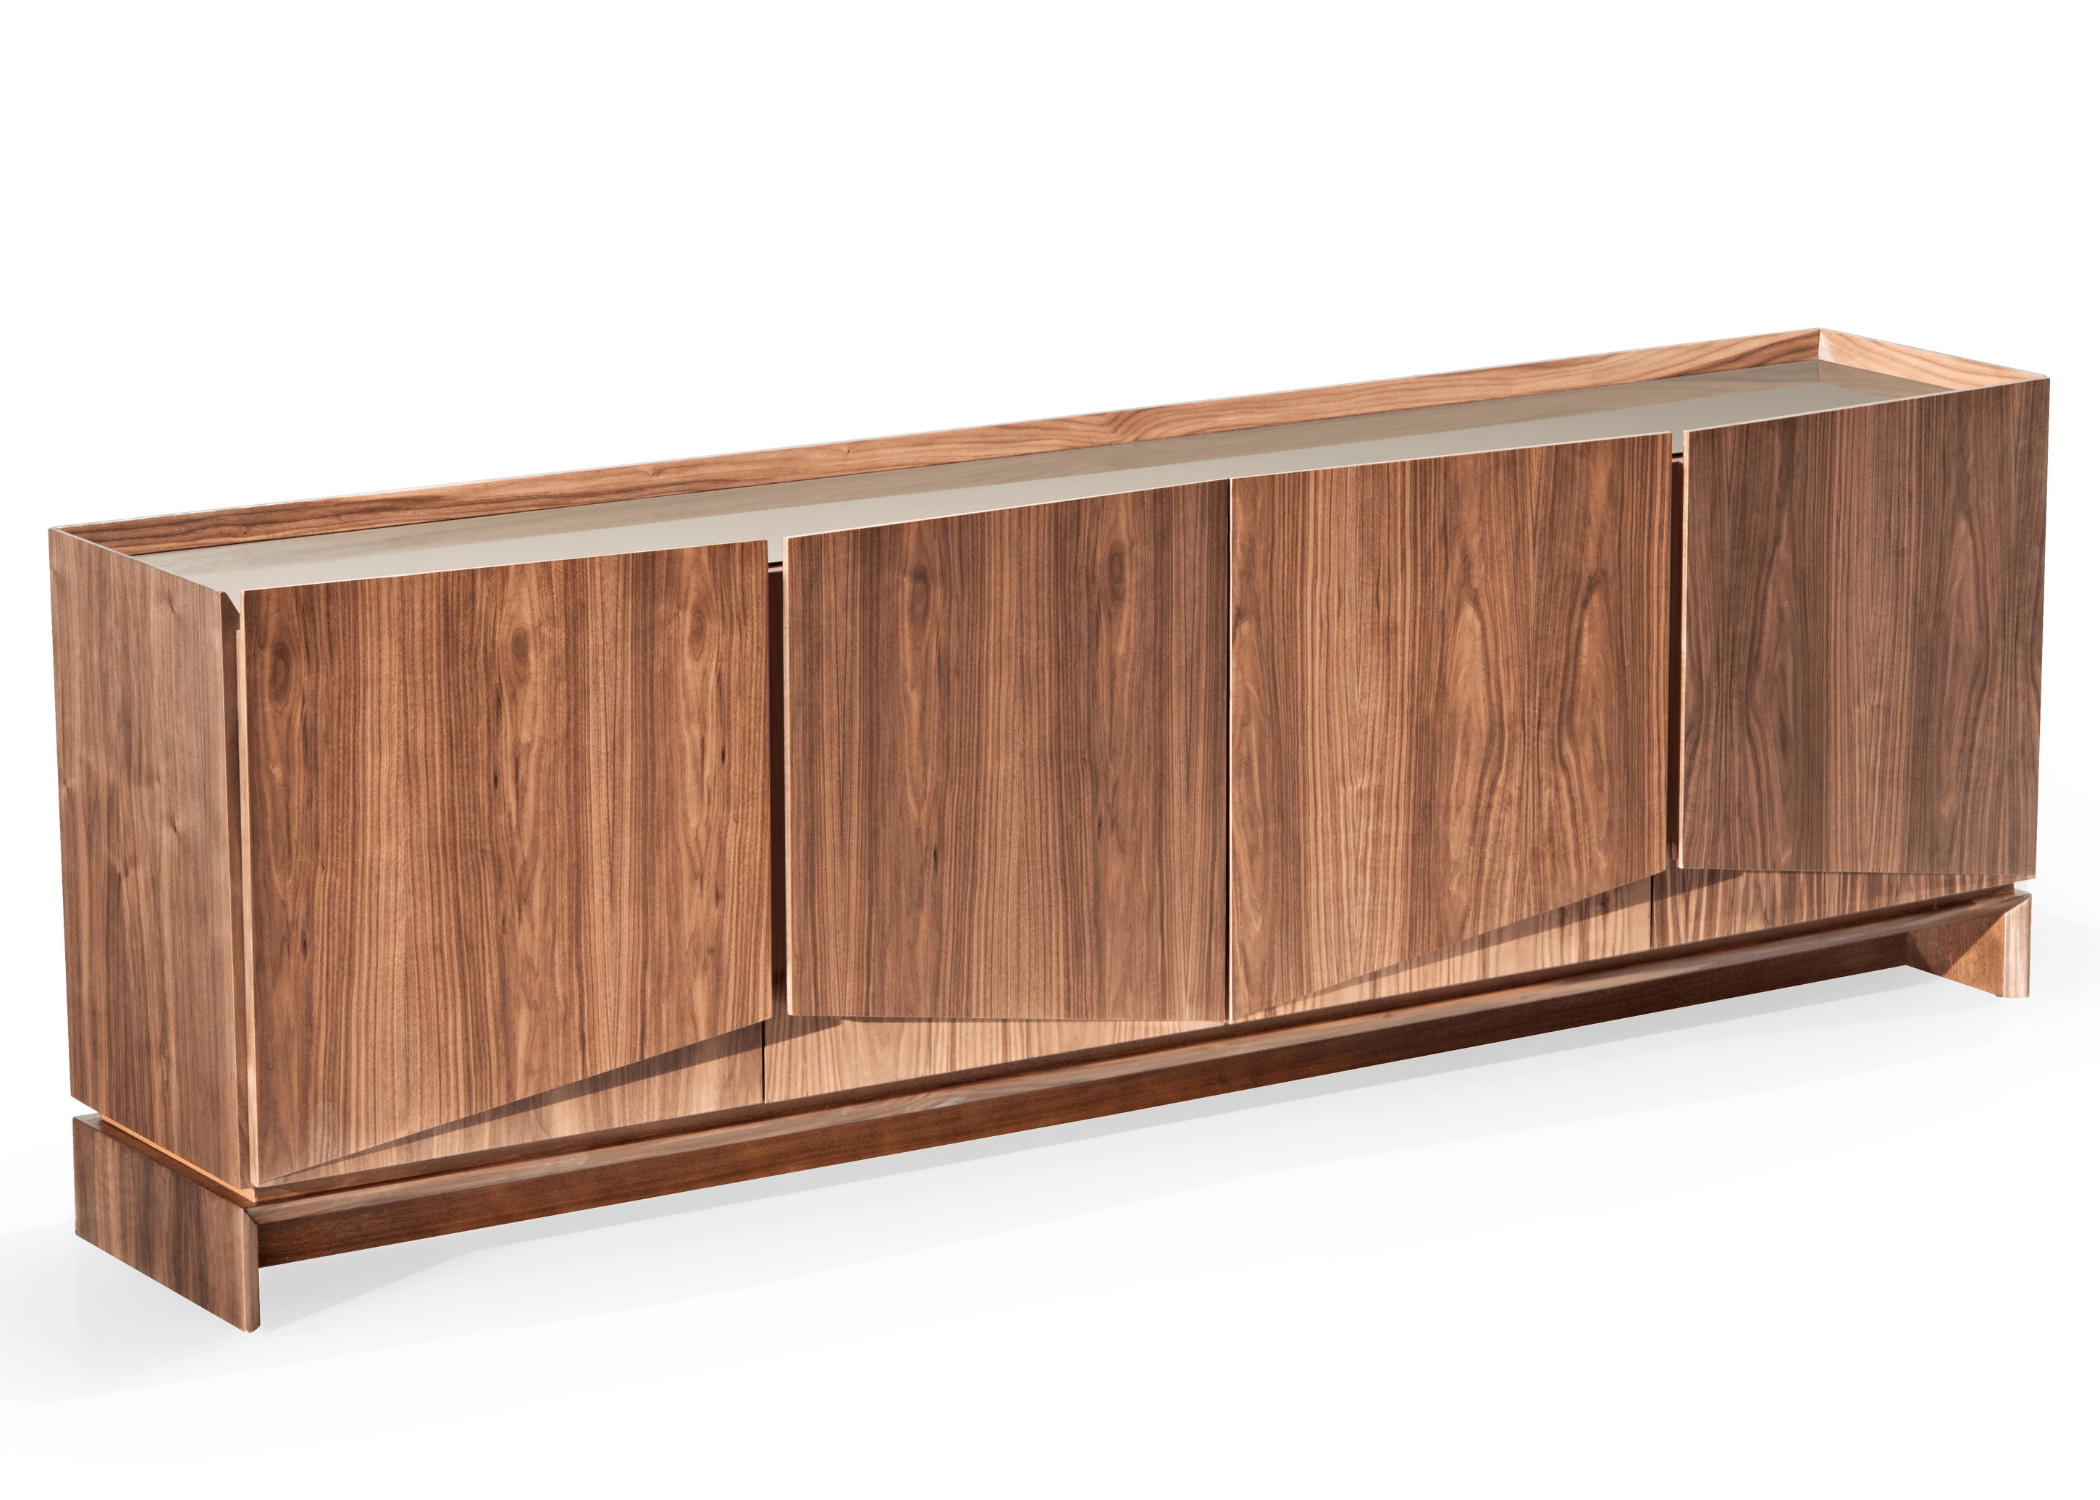 Detalhe do tampo em lâmina de madeira com vidro laqueado do Buffet Charlie, destacando seu design contemporâneo.